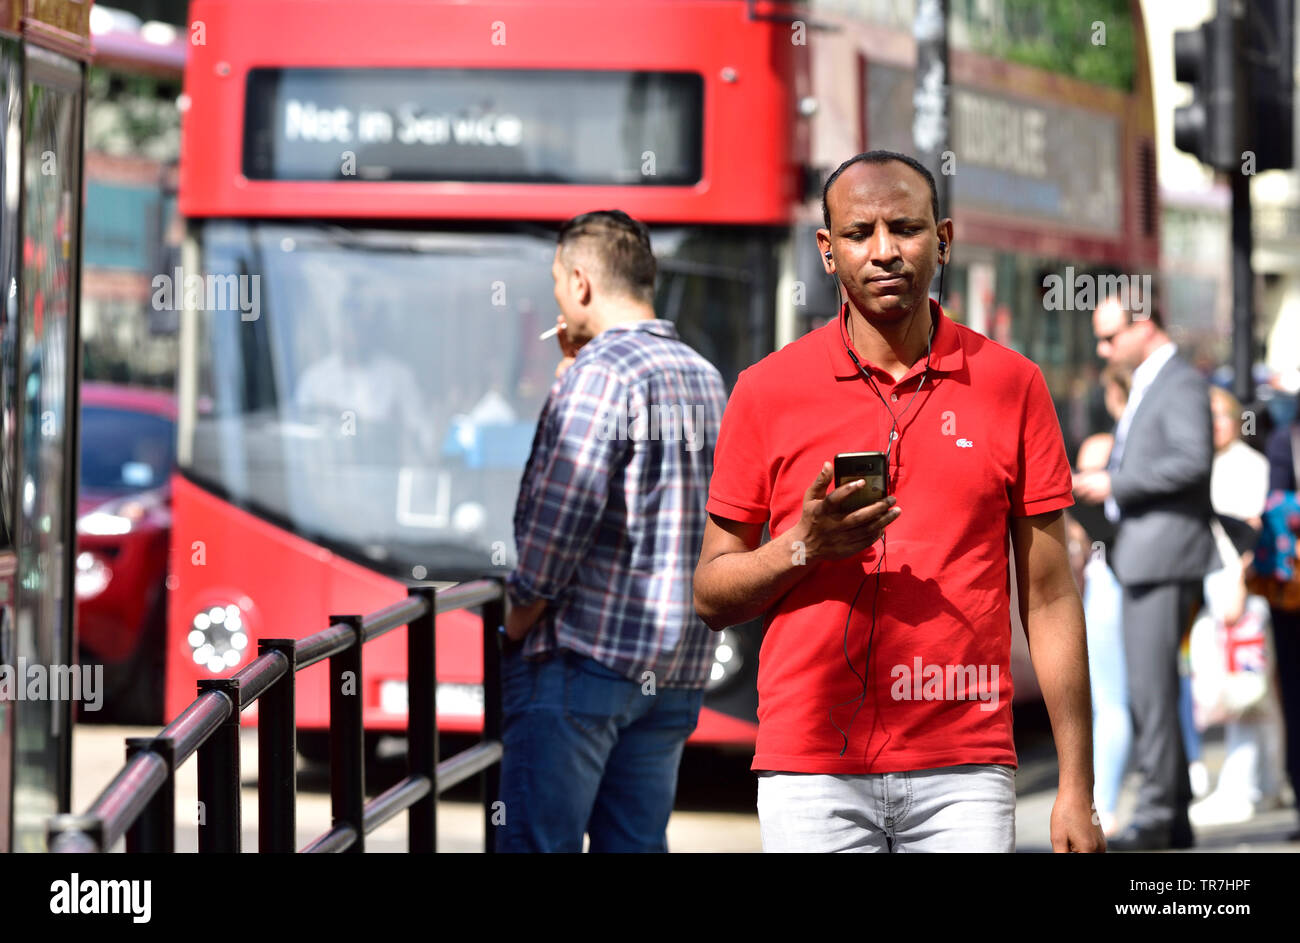 London, England, UK. Mann in einem t-shirt Musik auf sein Handy, Central London Stockfoto